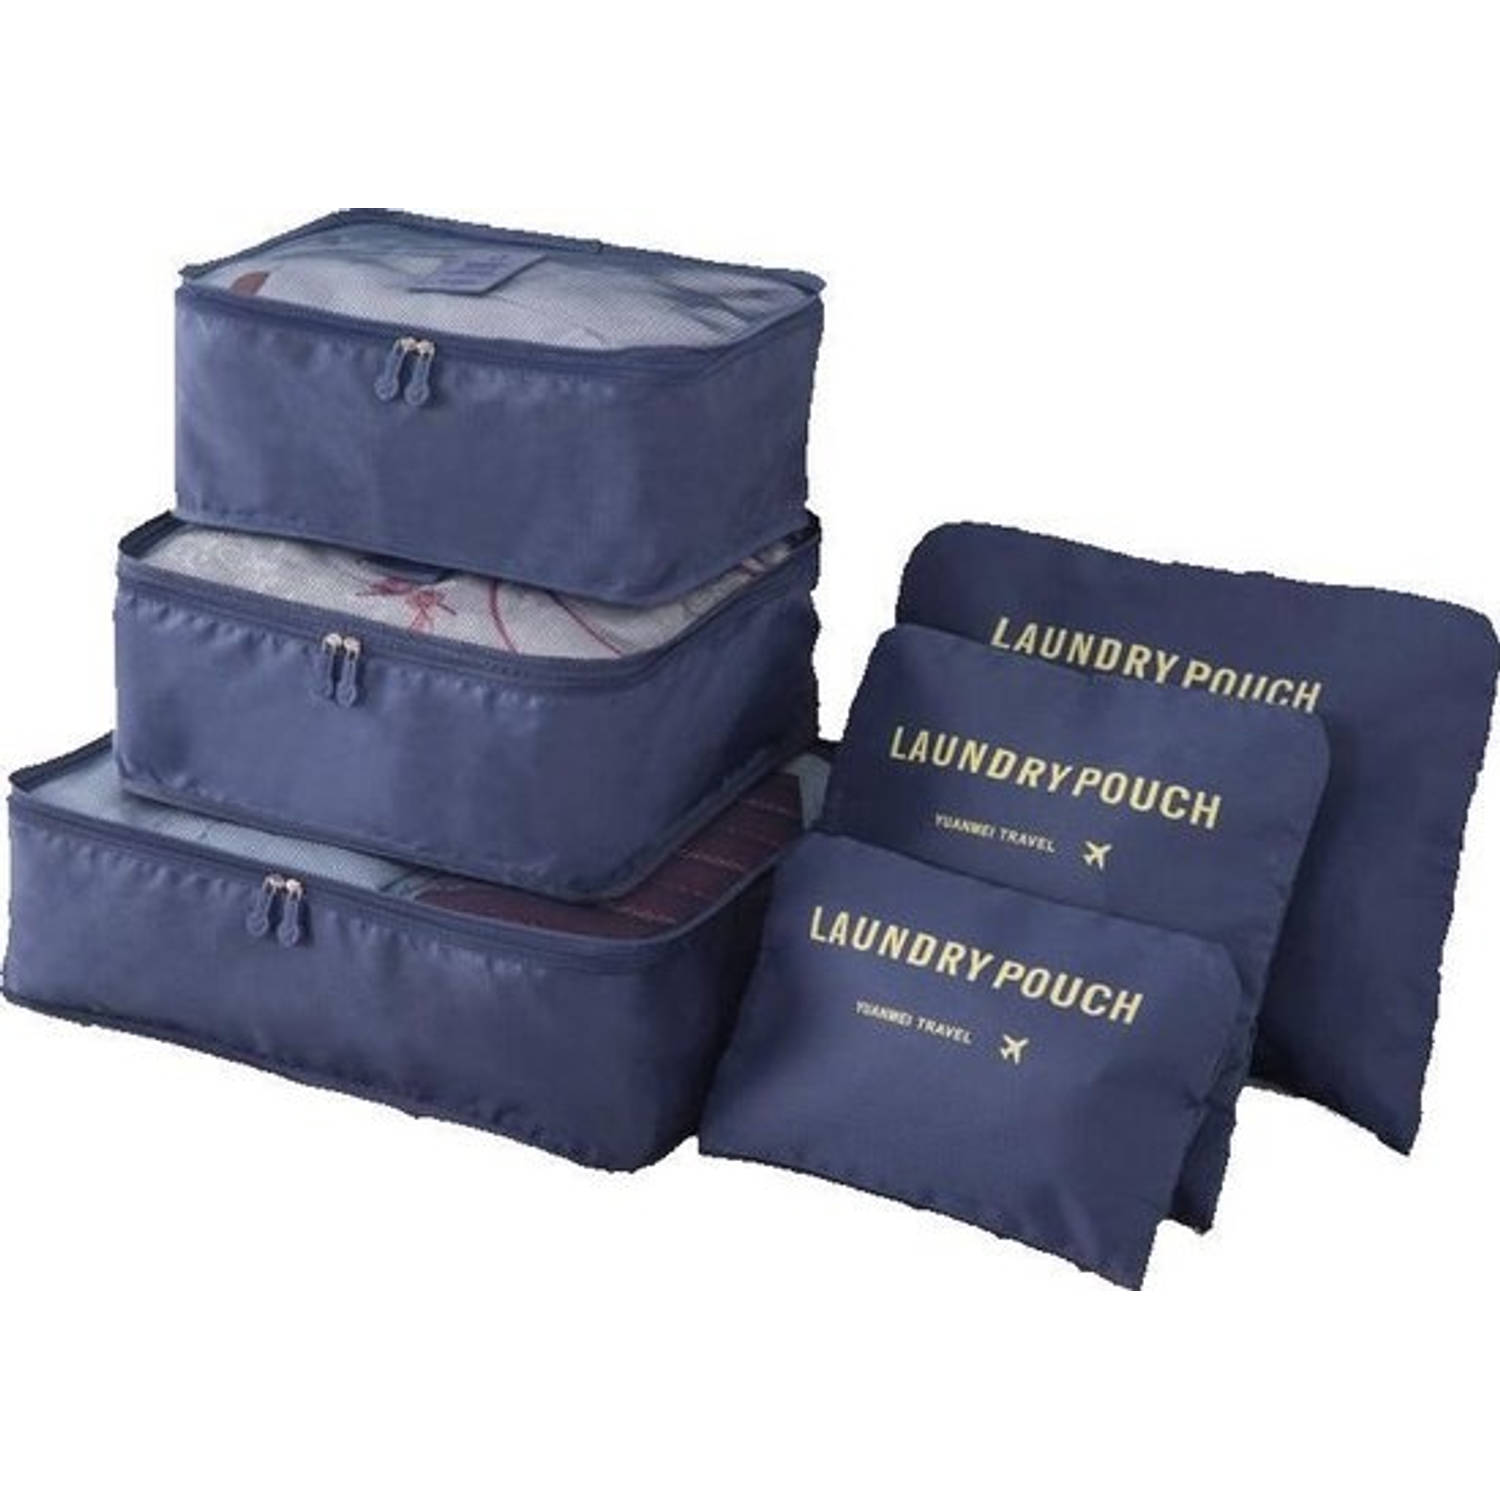 O'DADDY packing - 6 delig bagage donker blauw | Blokker